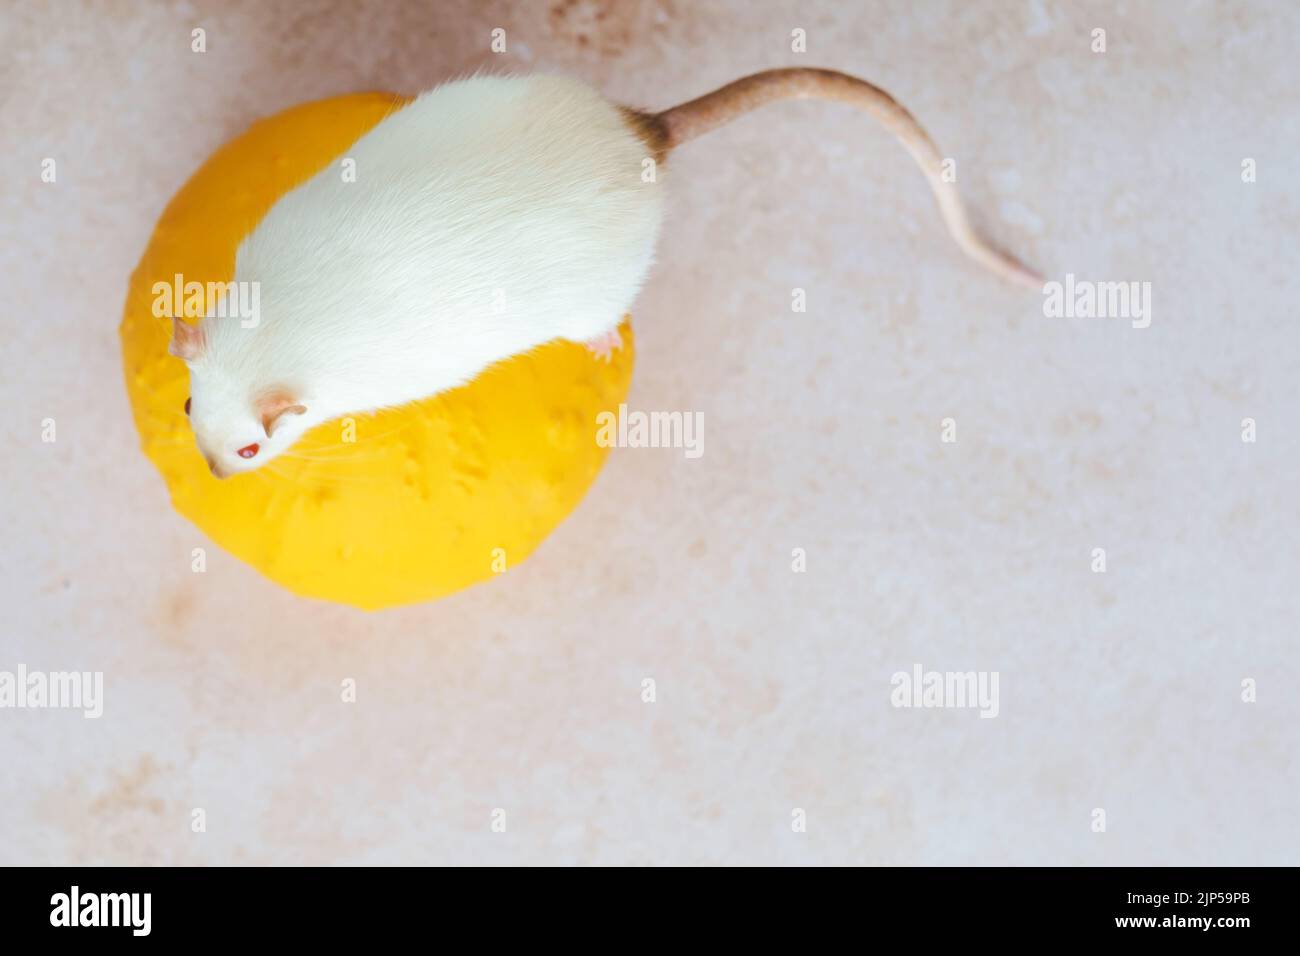 Weiße Herbstratte sitzt auf einem Kürbis. Herbstsaison der Ratten. Draufsicht Stockfoto